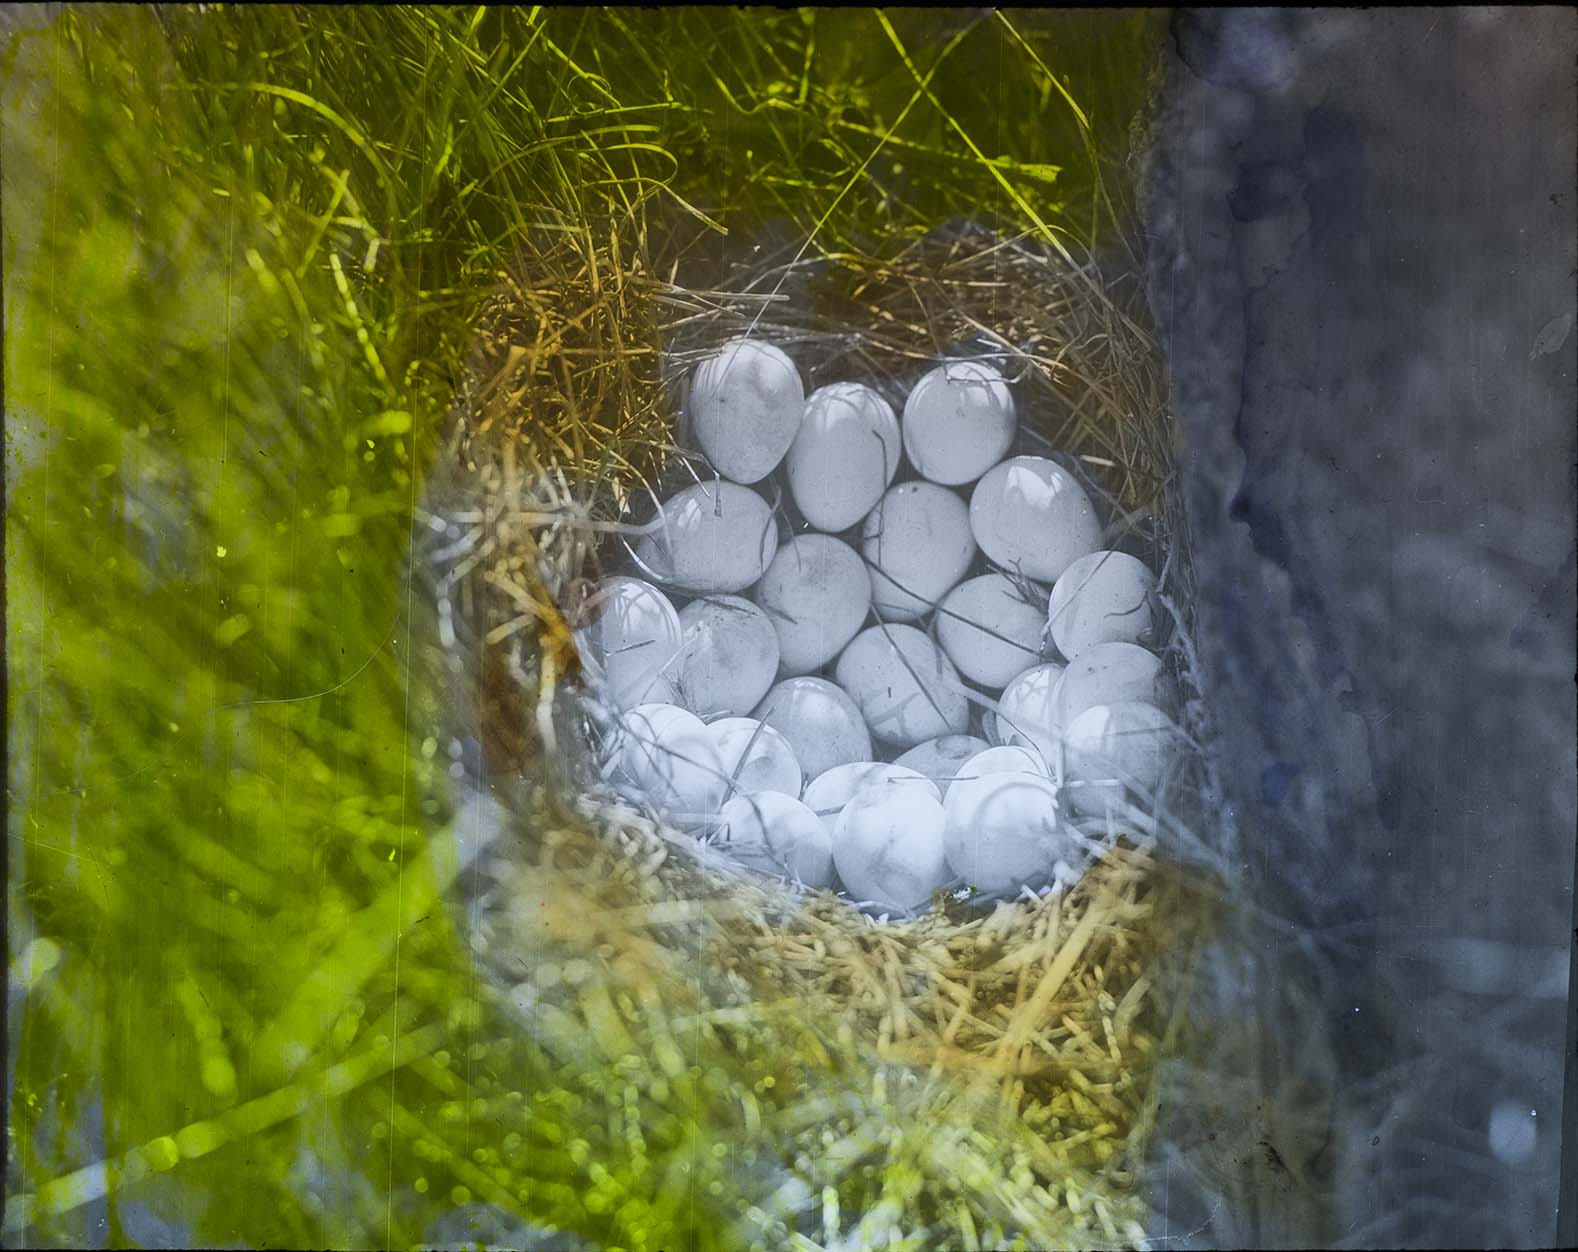 Lantern slide of eggs in a Quail nest